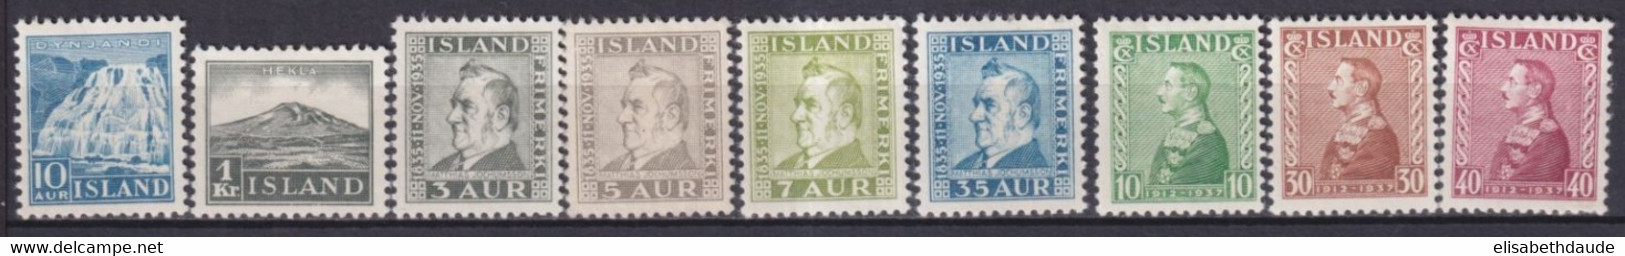 ISLANDE - 1935/1937 - YVERT N° 158/166 * MLH - COTE = 109 EUR. - Unused Stamps